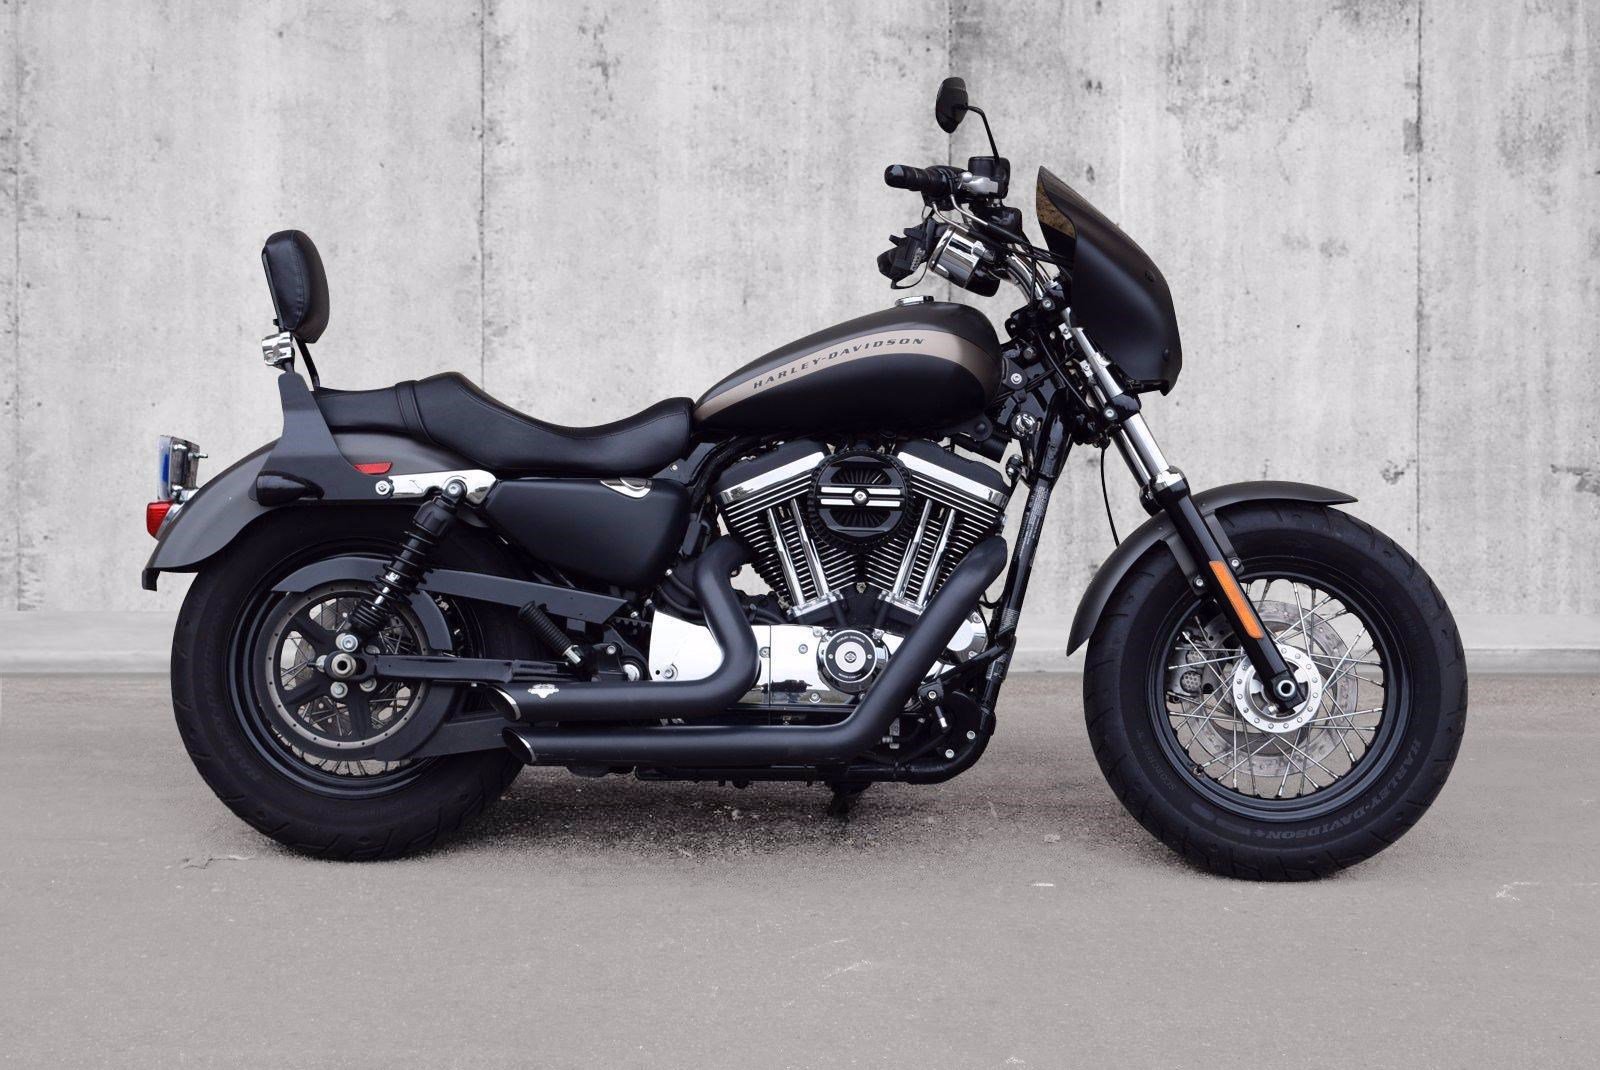 Pre-Owned 2018 Harley-Davidson Sportster 1200 Custom XL1200C Sportster